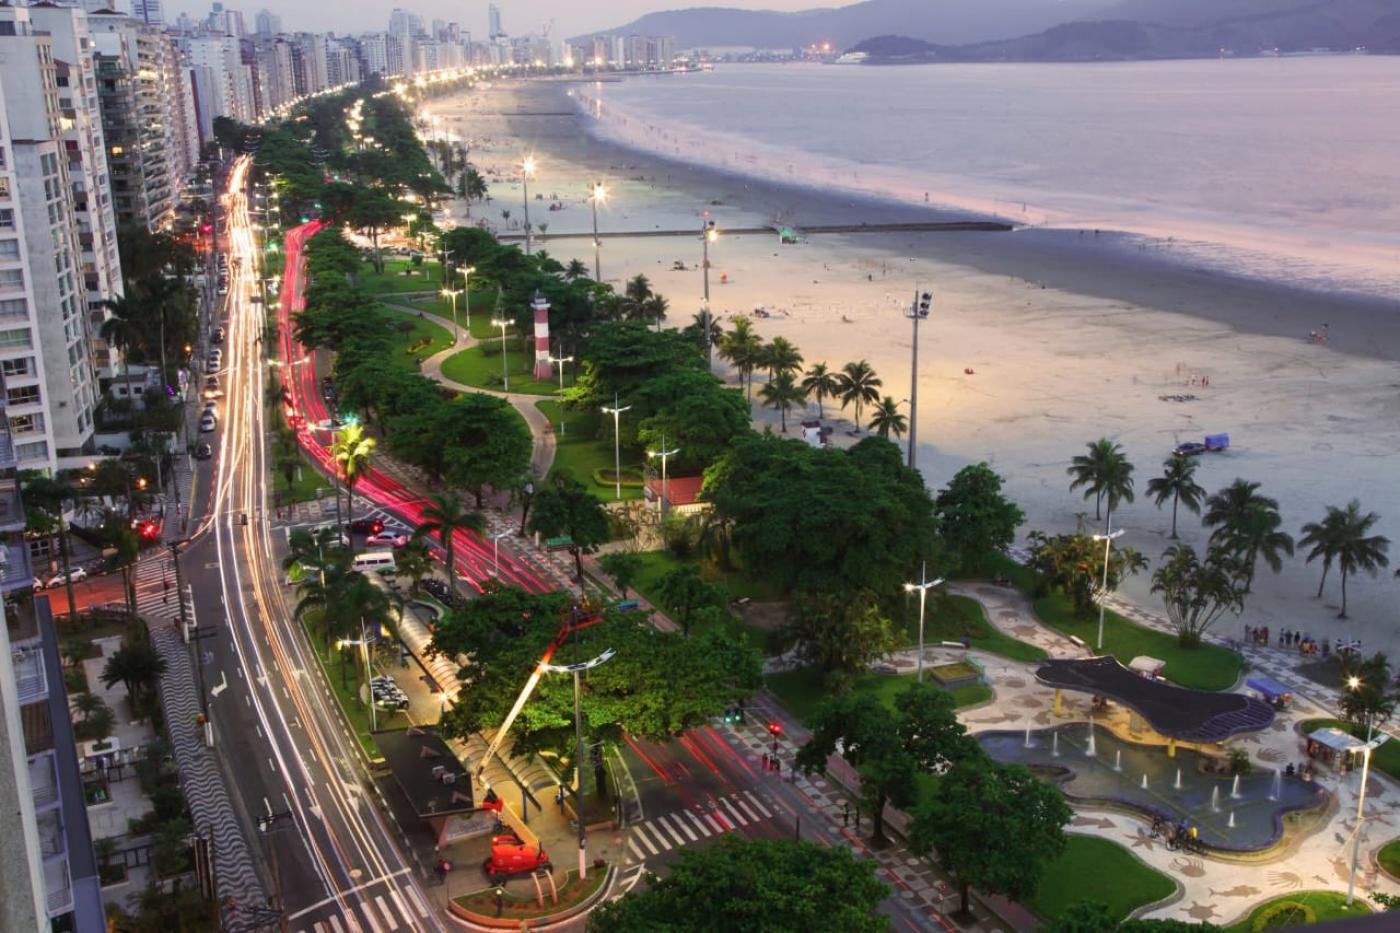 imagem aérea da orla da praia aparecendo prédios, avenidas, jardim, areia e mar #paratodosverem